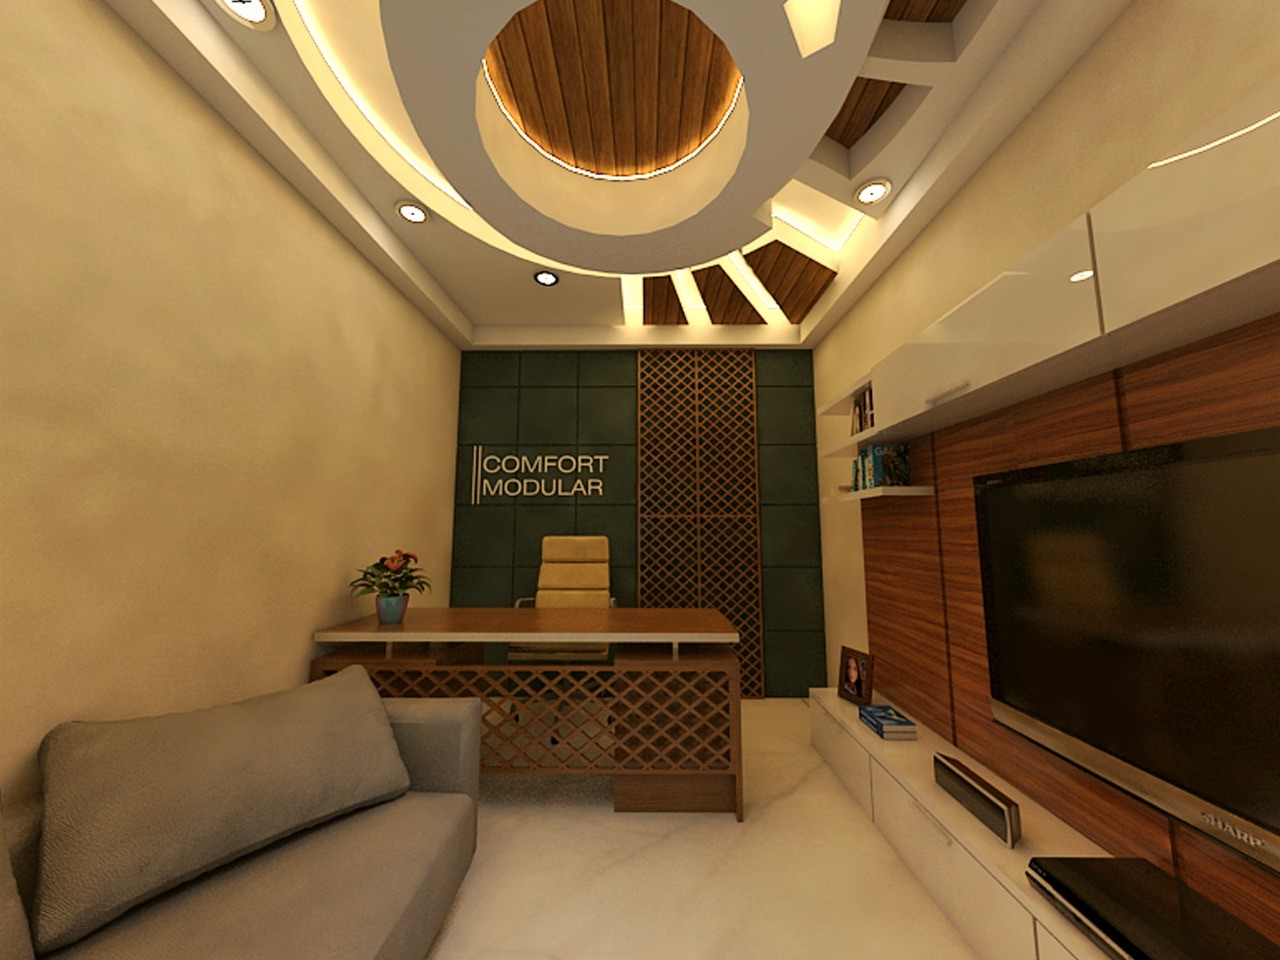 Comfort Modulars & Interiors in Medavakkam, Chennai600100 Sulekha